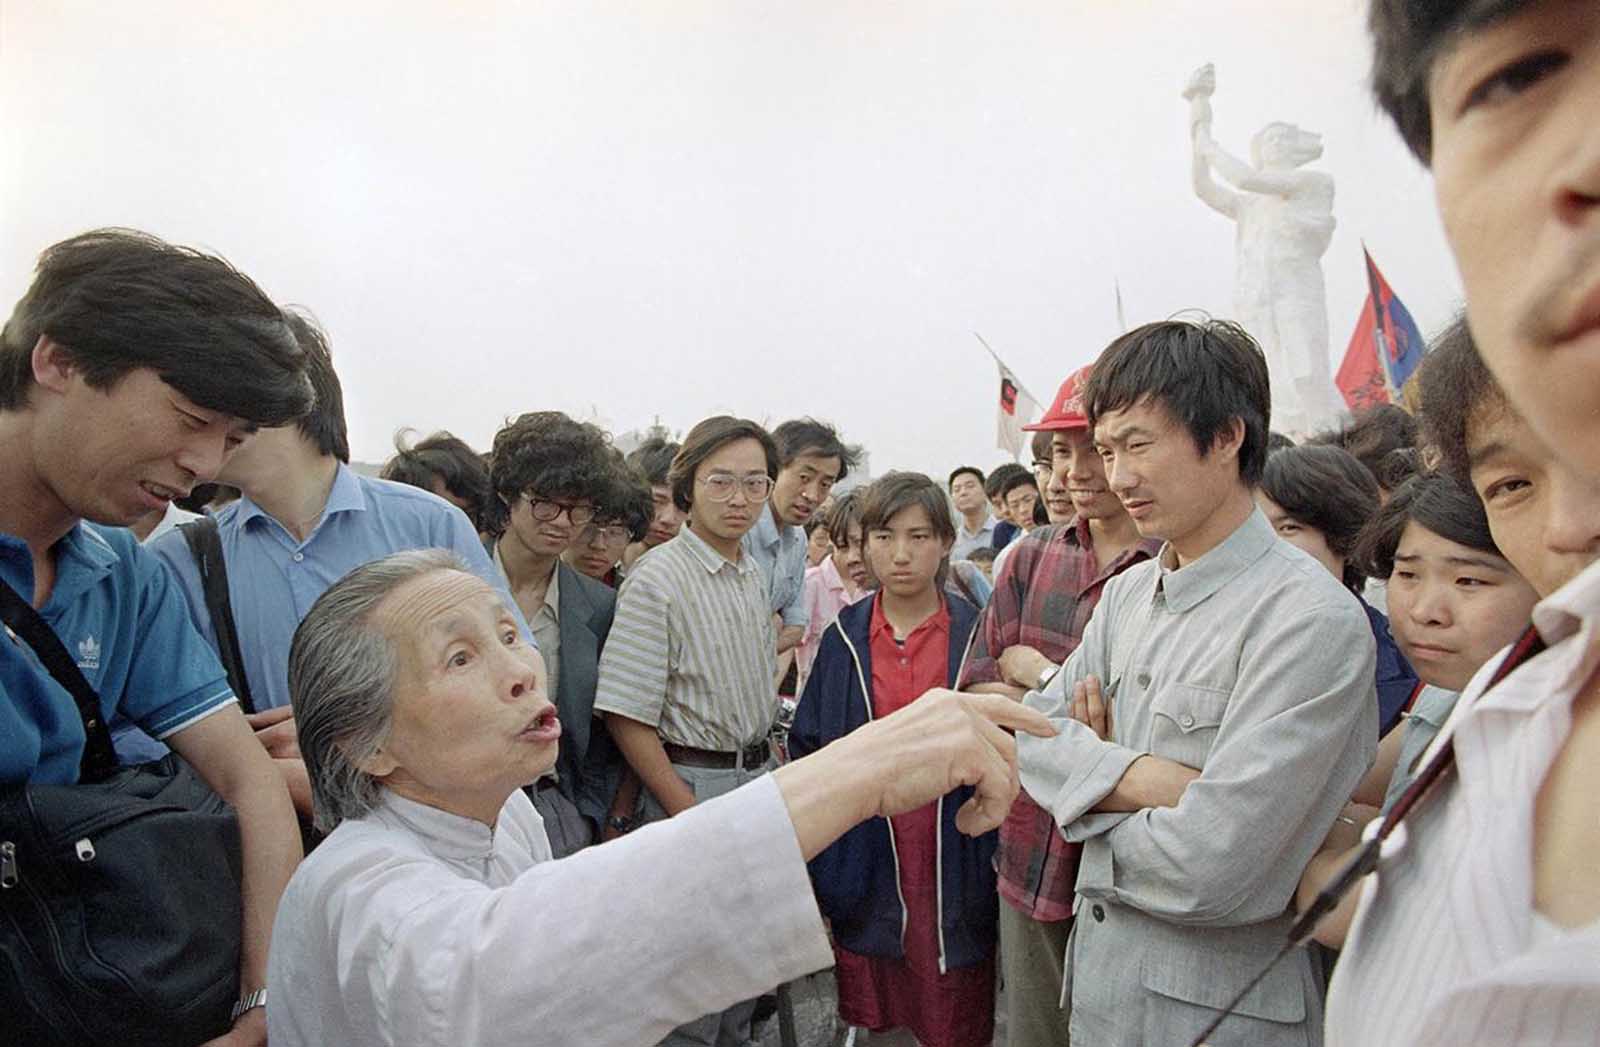 Les manifestations de la Place Tiananmen en images, 1989